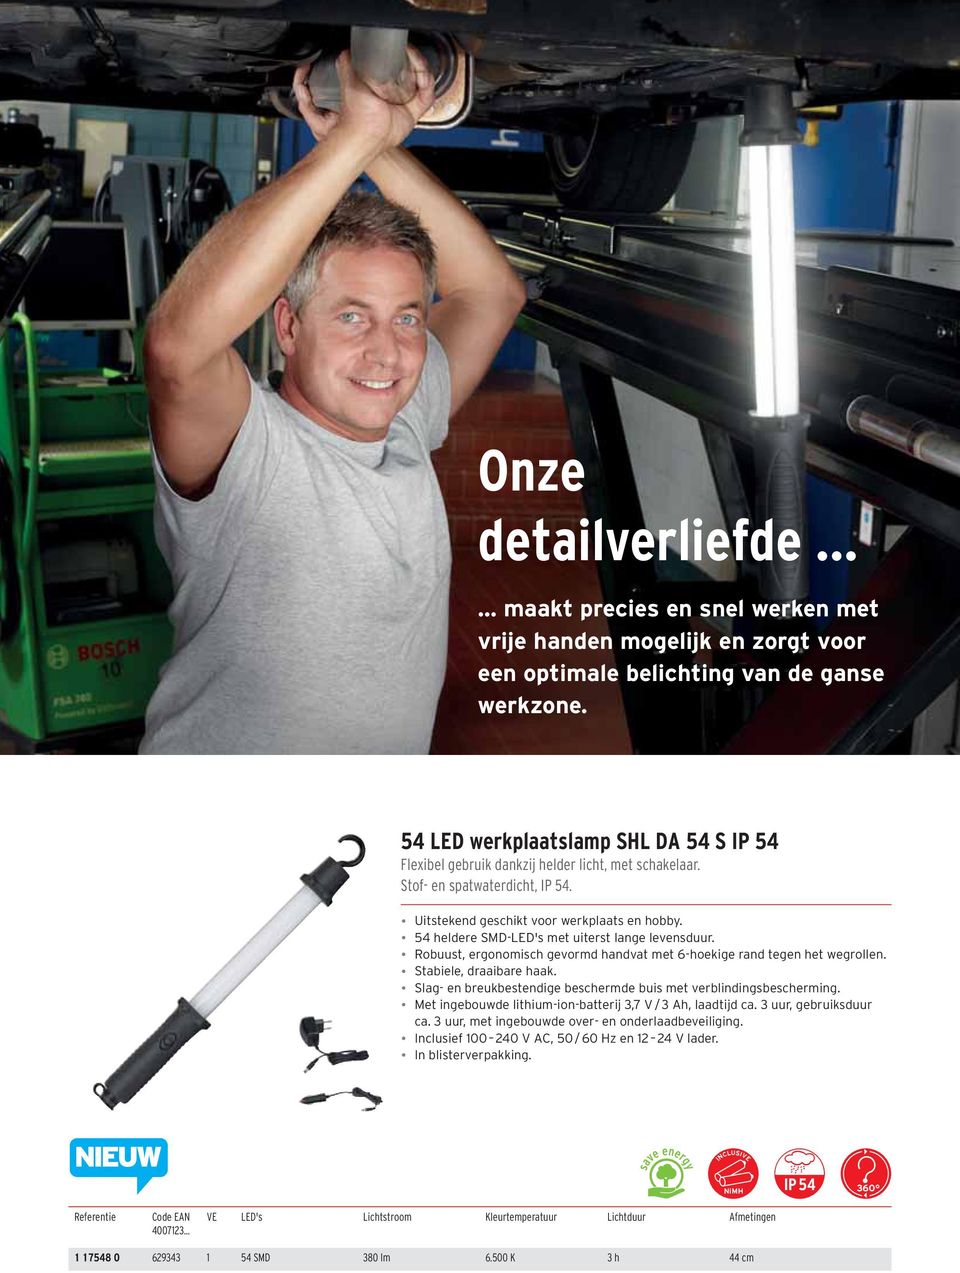 54 heldere SMD-LED's met uiterst lange levensduur. Stabiele, draaibare haak. Slag- en breukbestendige beschermde buis met verblindingsbescherming.